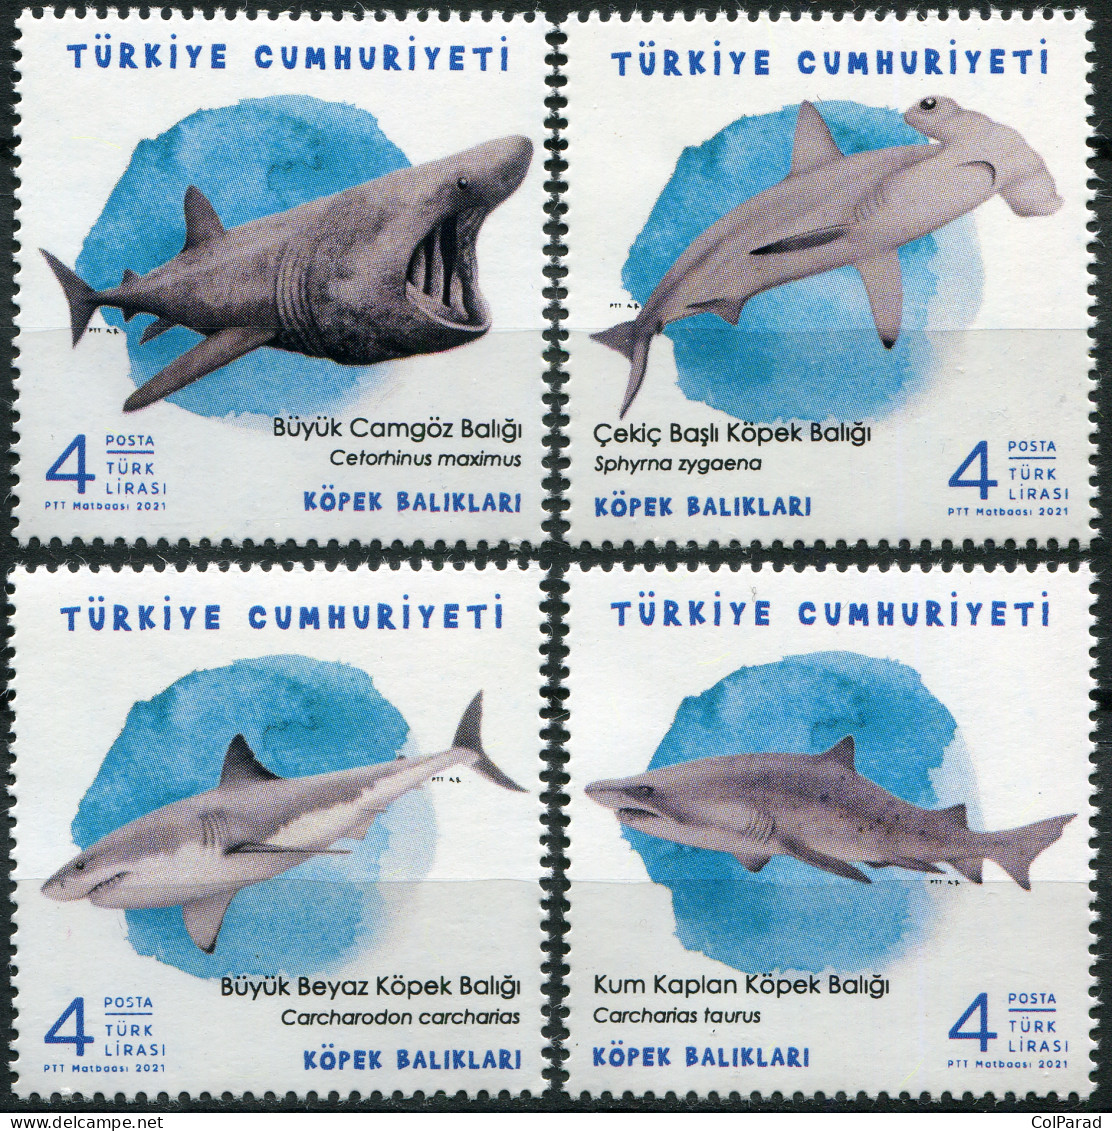 TURKEY - 2021 - SET OF 4 STAMPS MNH ** - Sharks - Ongebruikt